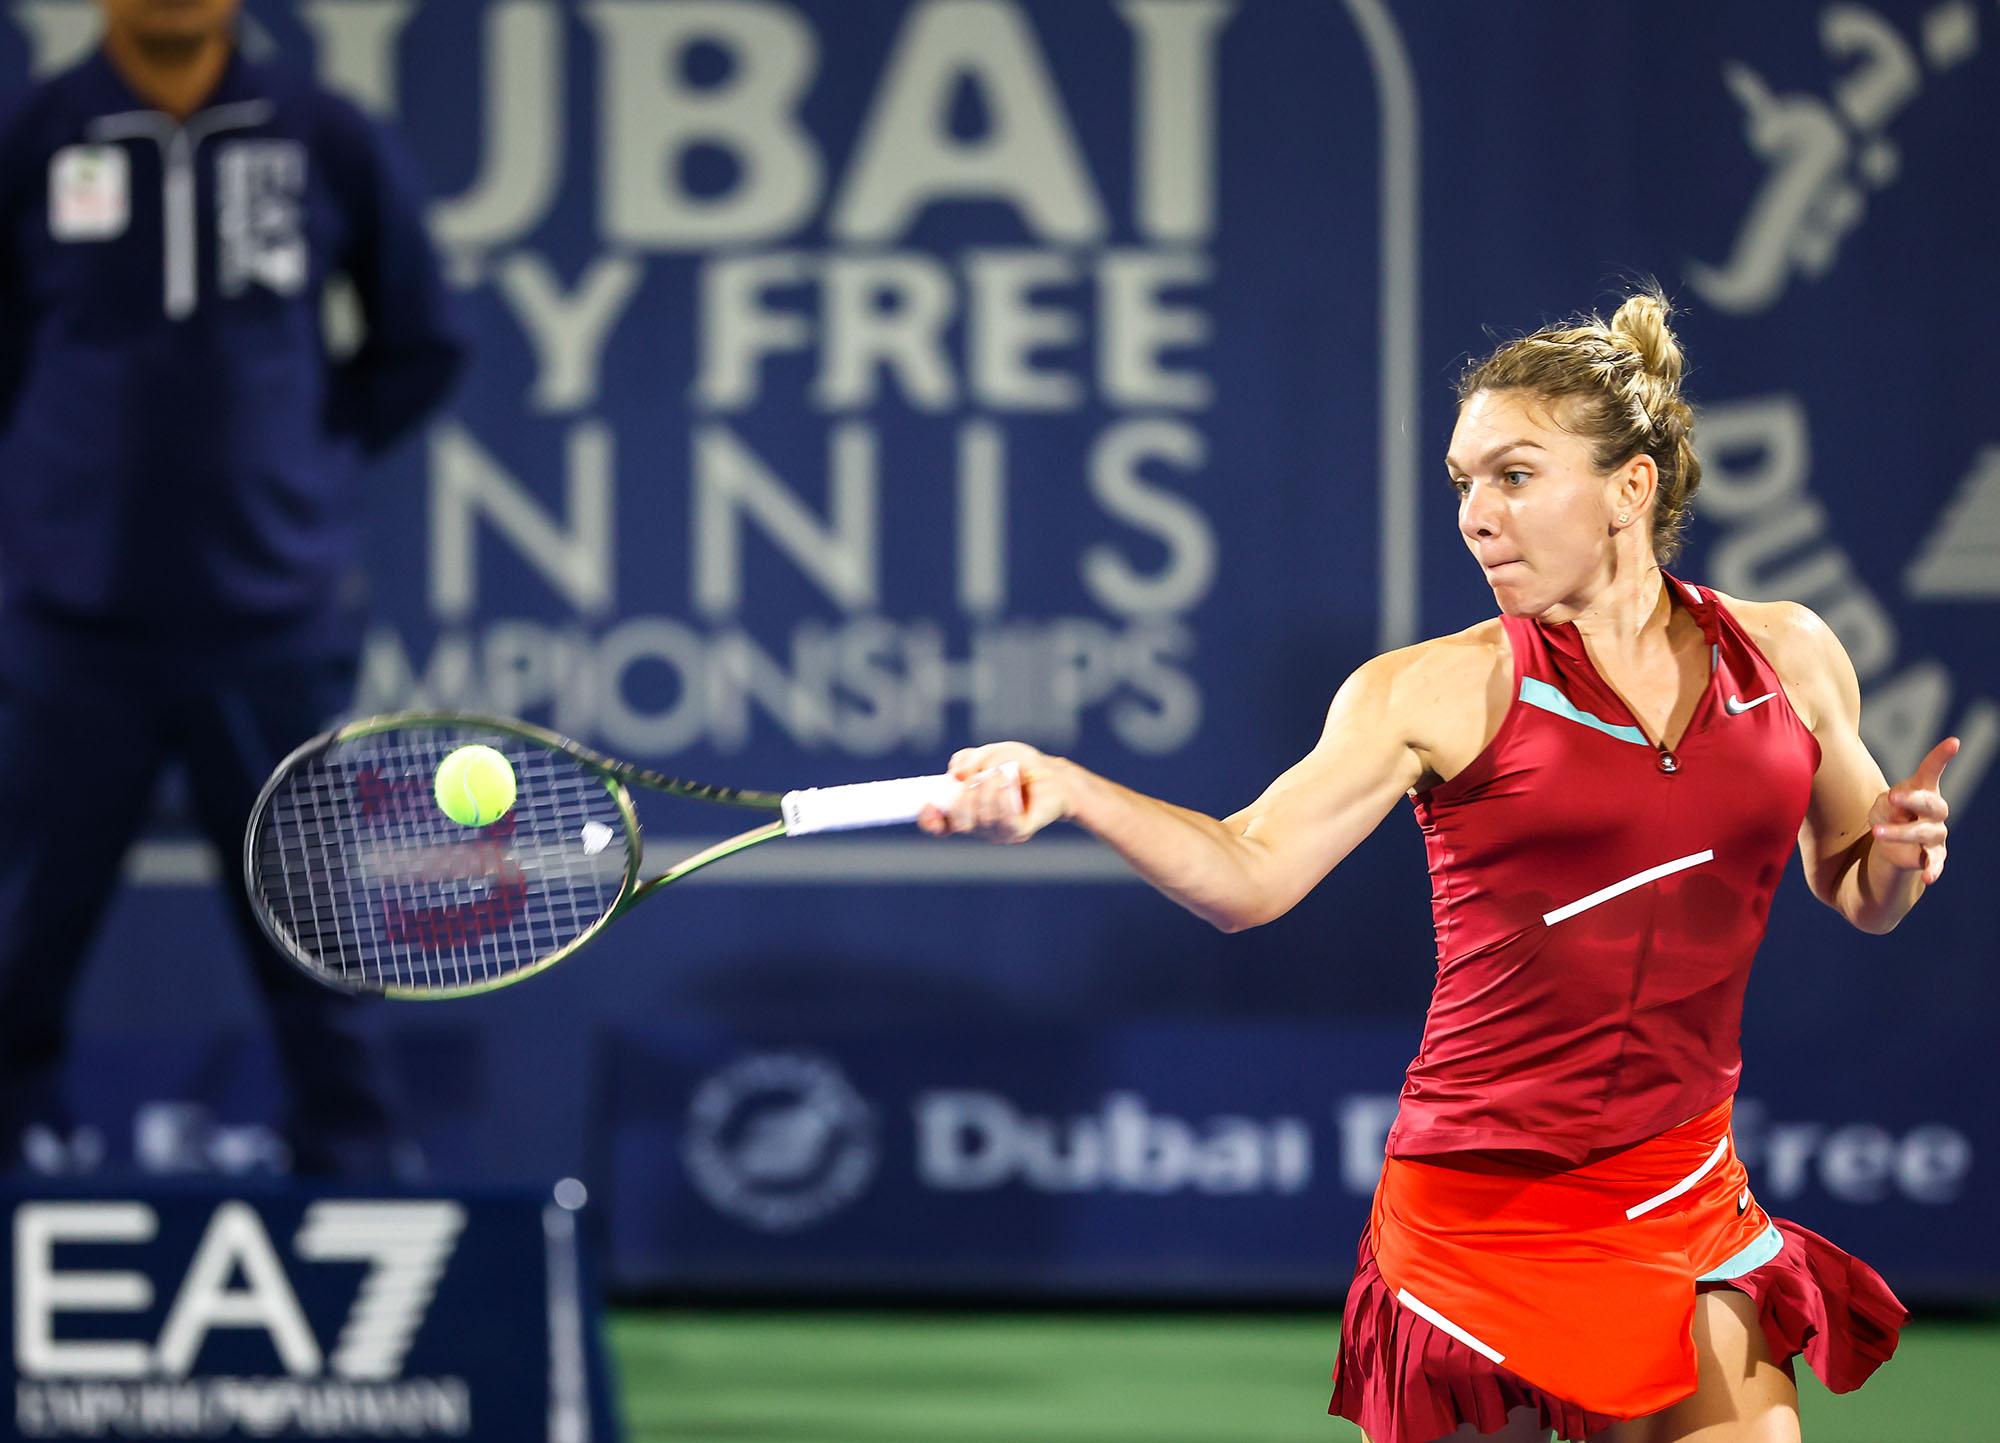 Dubai victory lifts Krejcikova into WTA Top 20